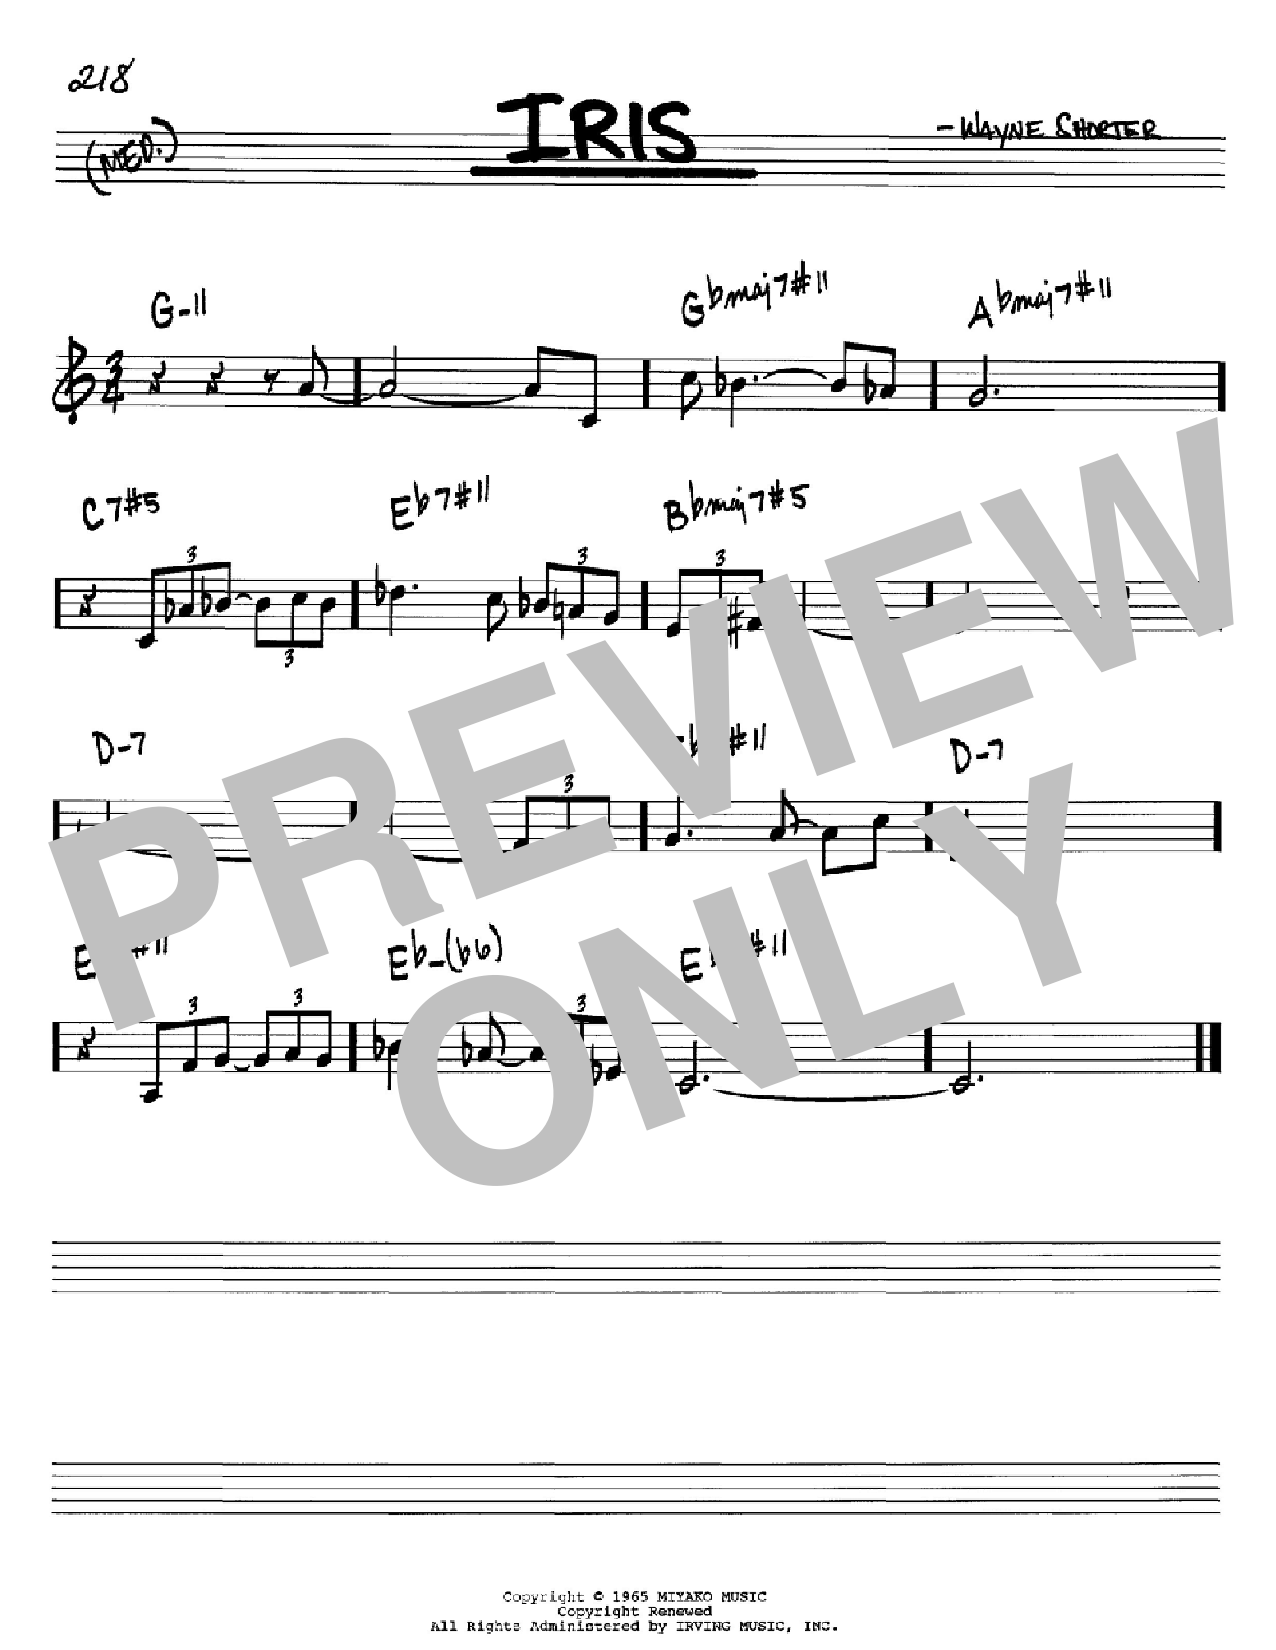 Download Wayne Shorter Iris Sheet Music